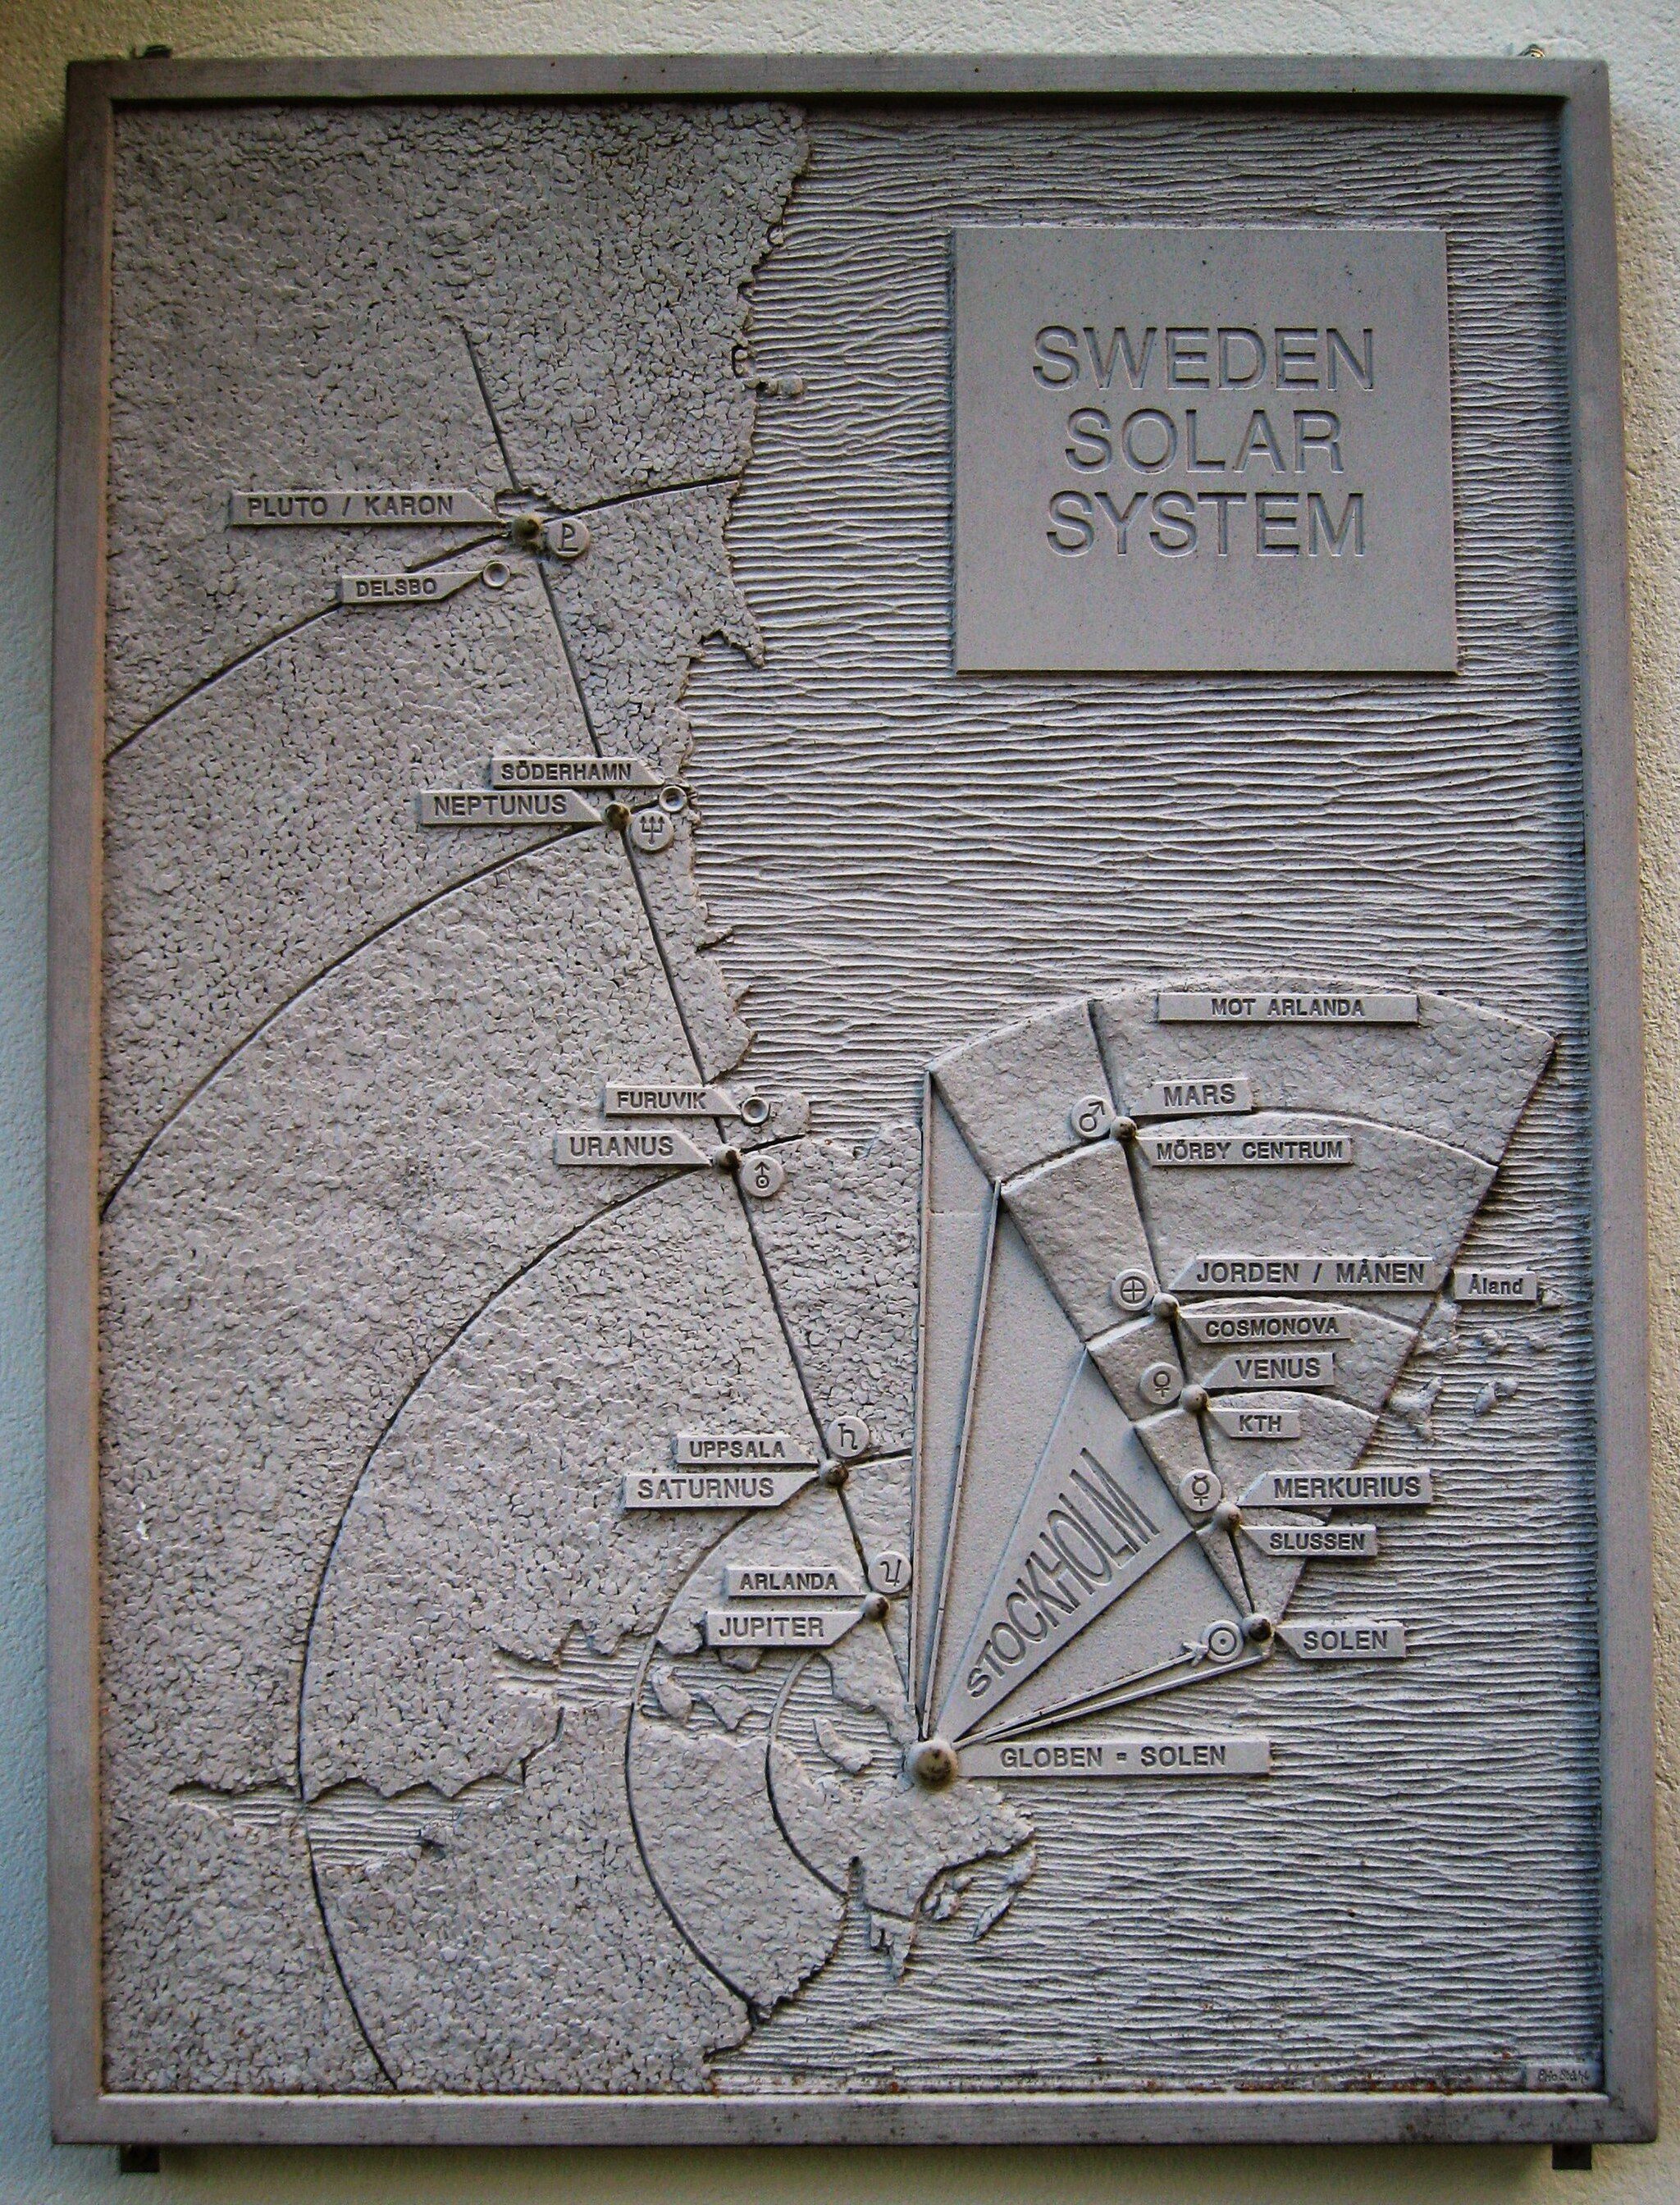 Hay todo un sistema solar escondido en Suecia